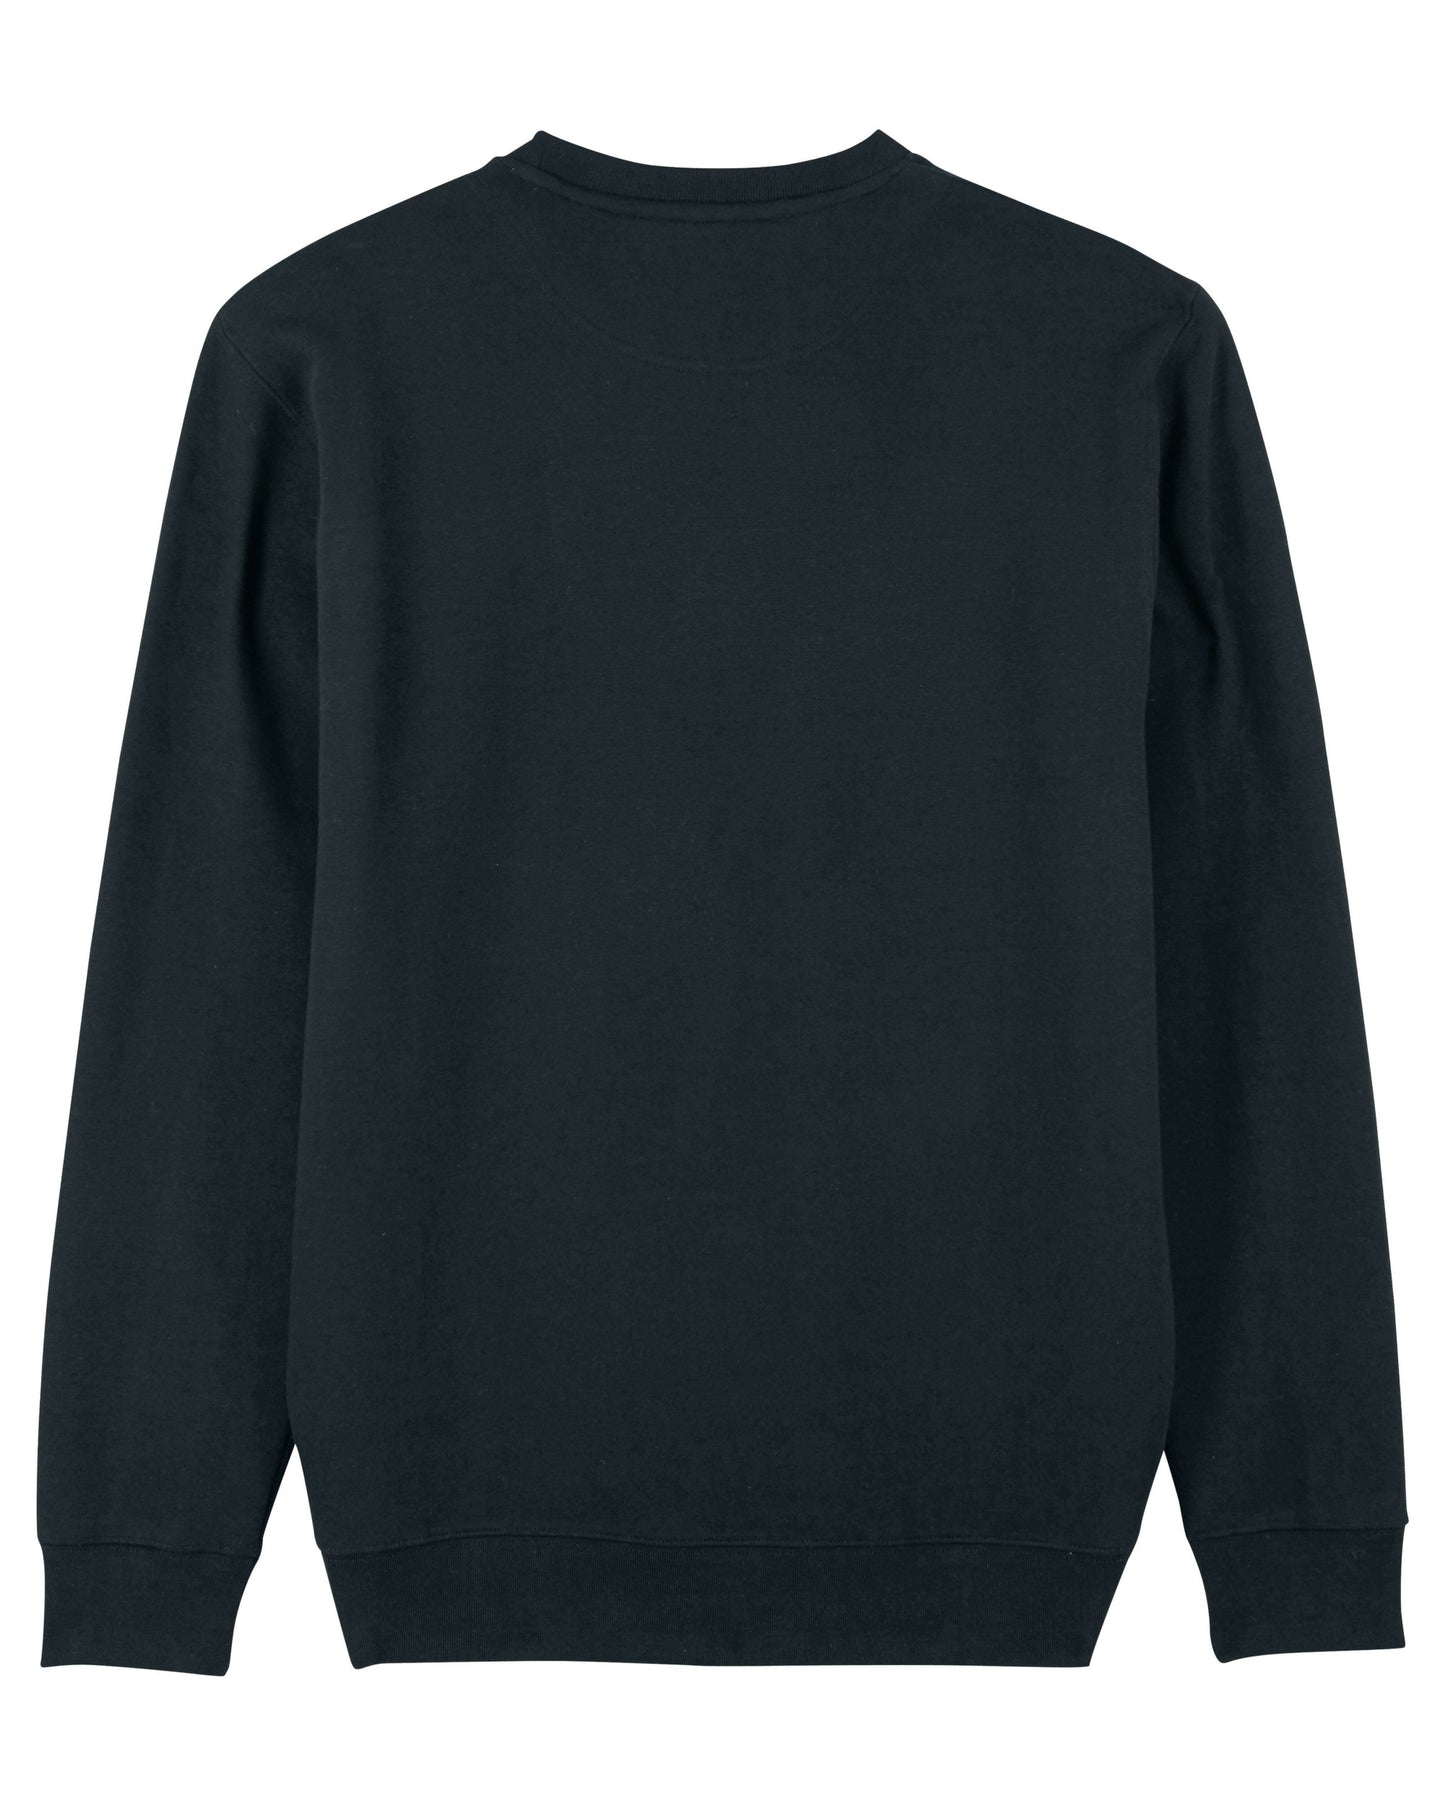 Produktbild des schwarzen, gemütlichen Extra Sweaters.